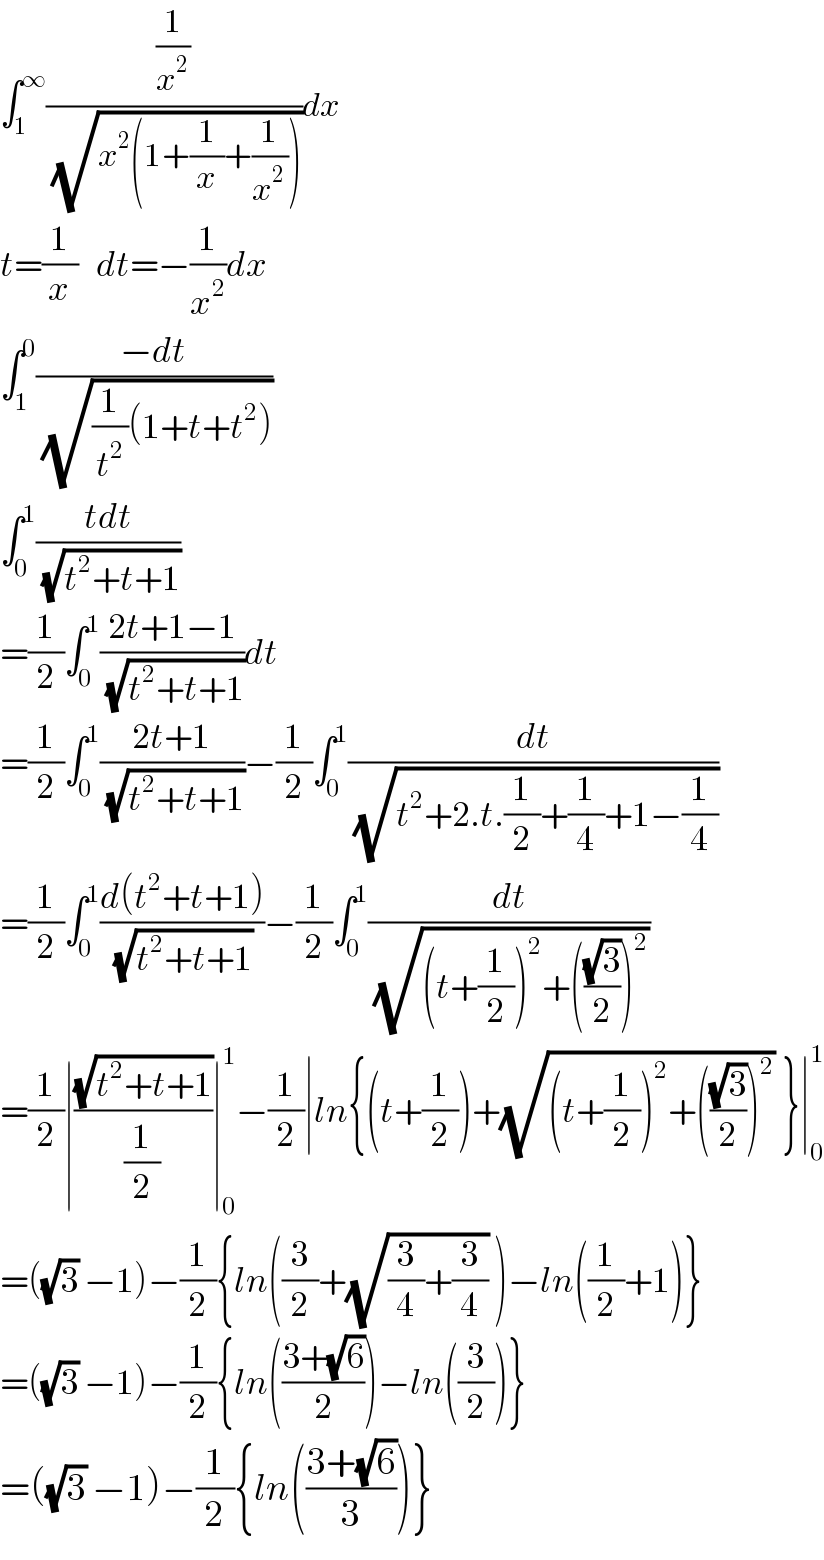 ∫_1 ^∞ ((1/x^2 )/(√(x^2 (1+(1/x)+(1/x^(2 ) )))))dx  t=(1/x)   dt=−(1/x^2 )dx  ∫_1 ^0 ((−dt)/(√((1/t^2 )(1+t+t^2 ))))  ∫_0 ^1 ((tdt)/(√(t^2 +t+1)))  =(1/2)∫_0 ^1 ((2t+1−1)/(√(t^2 +t+1)))dt  =(1/2)∫_0 ^1 ((2t+1)/(√(t^2 +t+1)))−(1/2)∫_0 ^1 (dt/(√(t^2 +2.t.(1/2)+(1/4)+1−(1/4))))  =(1/2)∫_0 ^1 ((d(t^2 +t+1))/(√(t^2 +t+1)))−(1/2)∫_0 ^1 (dt/(√((t+(1/2))^2 +(((√3)/2))^2 )))  =(1/2)∣((√(t^2 +t+1))/(1/2))∣_0 ^1 −(1/2)∣ln{(t+(1/2))+(√((t+(1/2))^2 +(((√3)/2))^2 )) }∣_0 ^1   =((√3) −1)−(1/2){ln((3/2)+(√((3/4)+(3/4))) )−ln((1/2)+1)}  =((√3) −1)−(1/2){ln(((3+(√6))/2))−ln((3/2))}  =((√3) −1)−(1/2){ln(((3+(√6))/3))}  